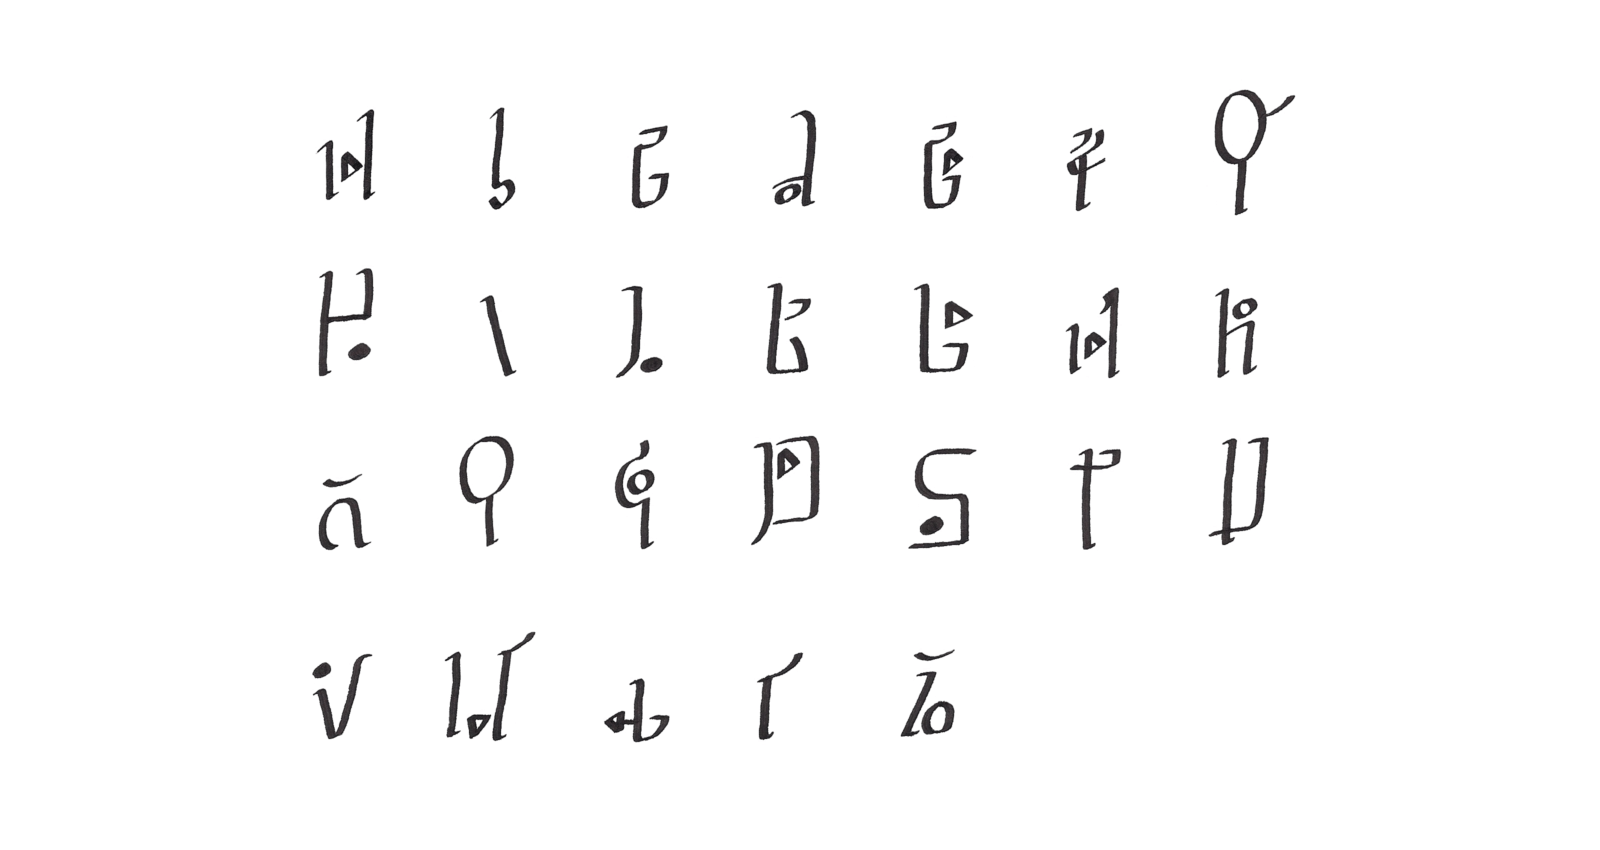 Hylian Roman alphabet. A to Z